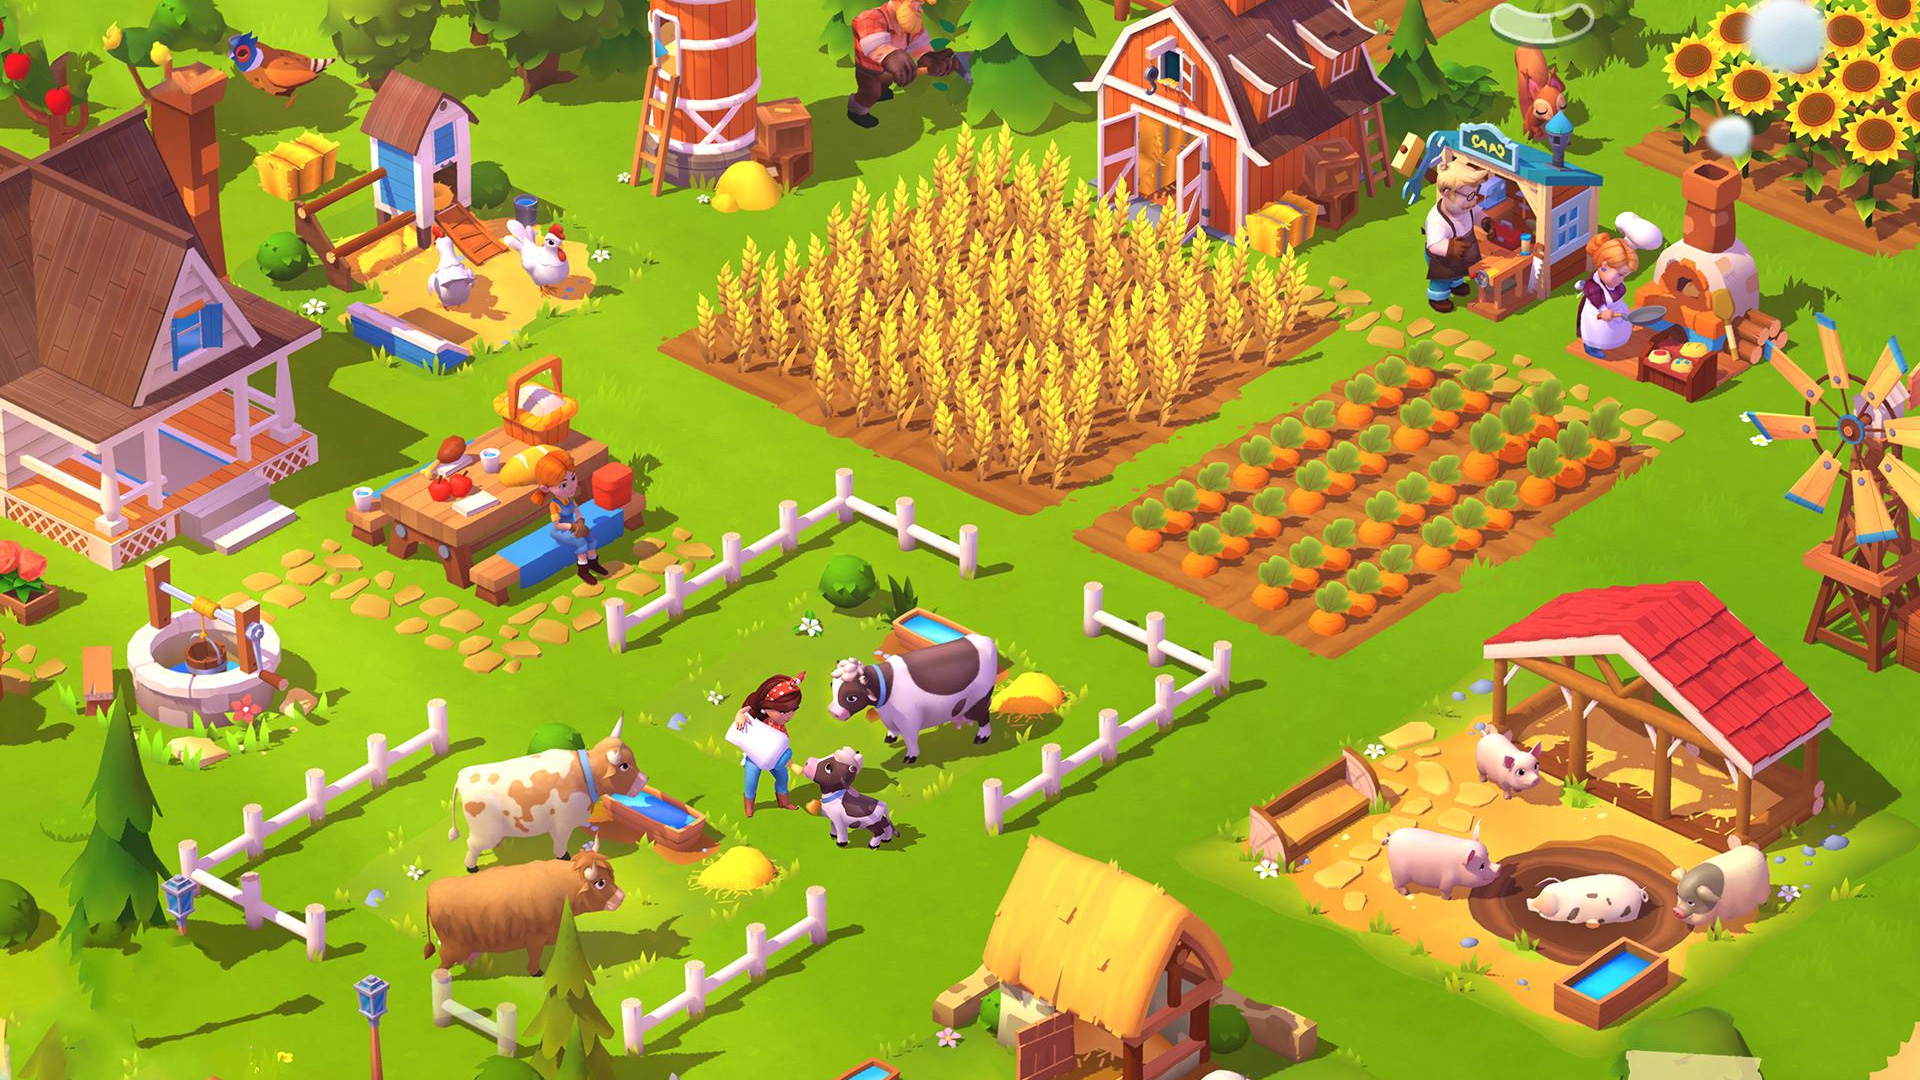 Farmville 3: Animals